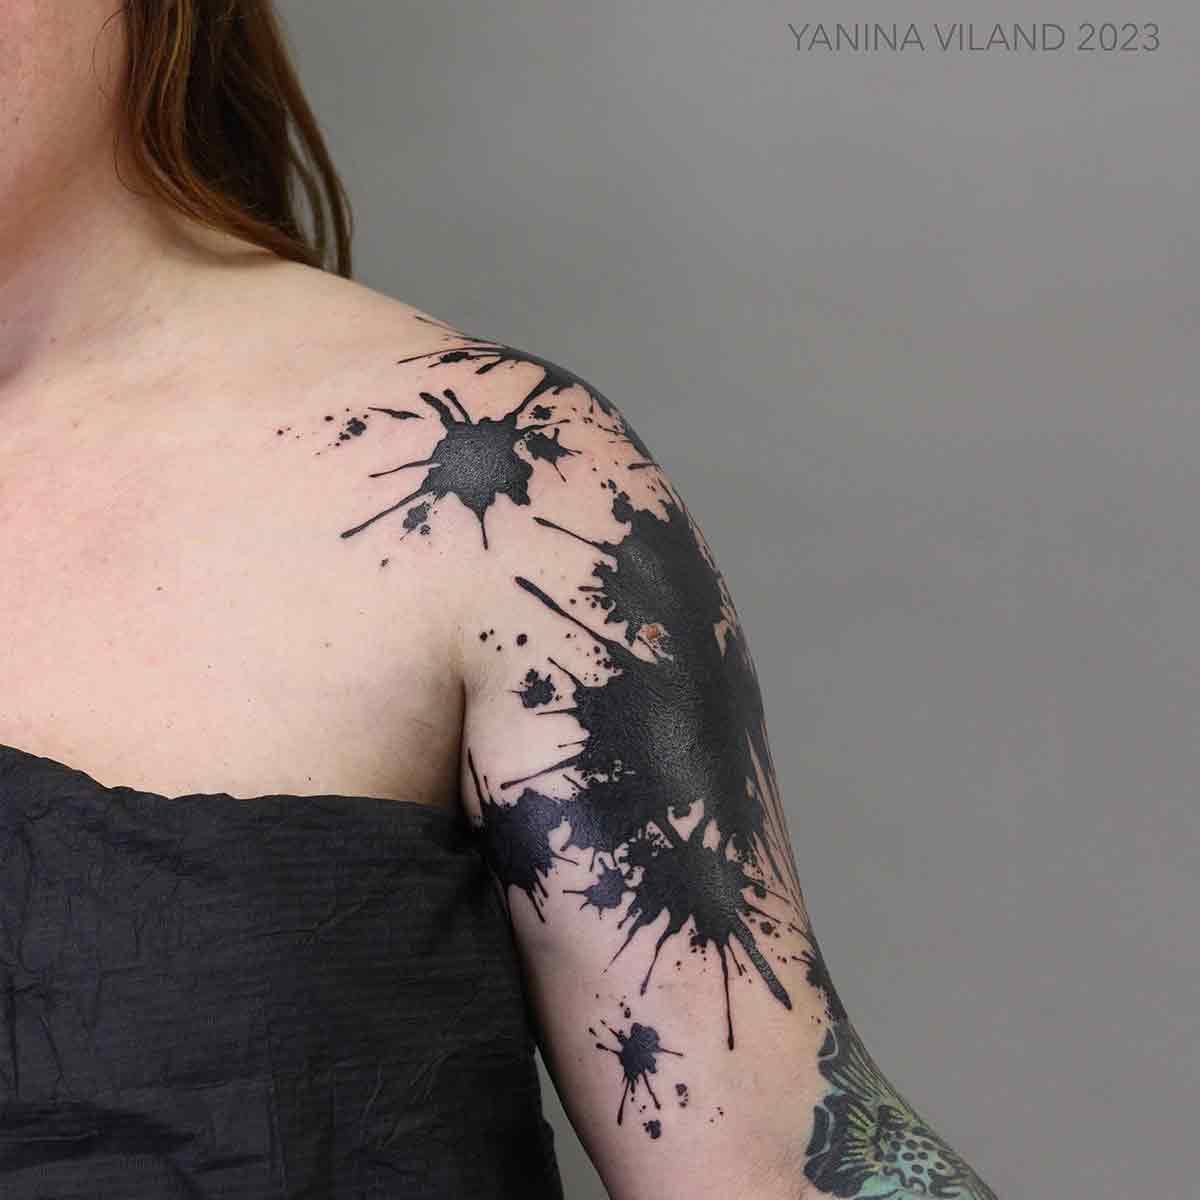 World Famous Tattoo Ink - Triple Blackout Tattoo Ink - Dark & Bold Black Shade - Professional Tattoo Ink & Tattoo Supplies - Skin-Safe Permanent